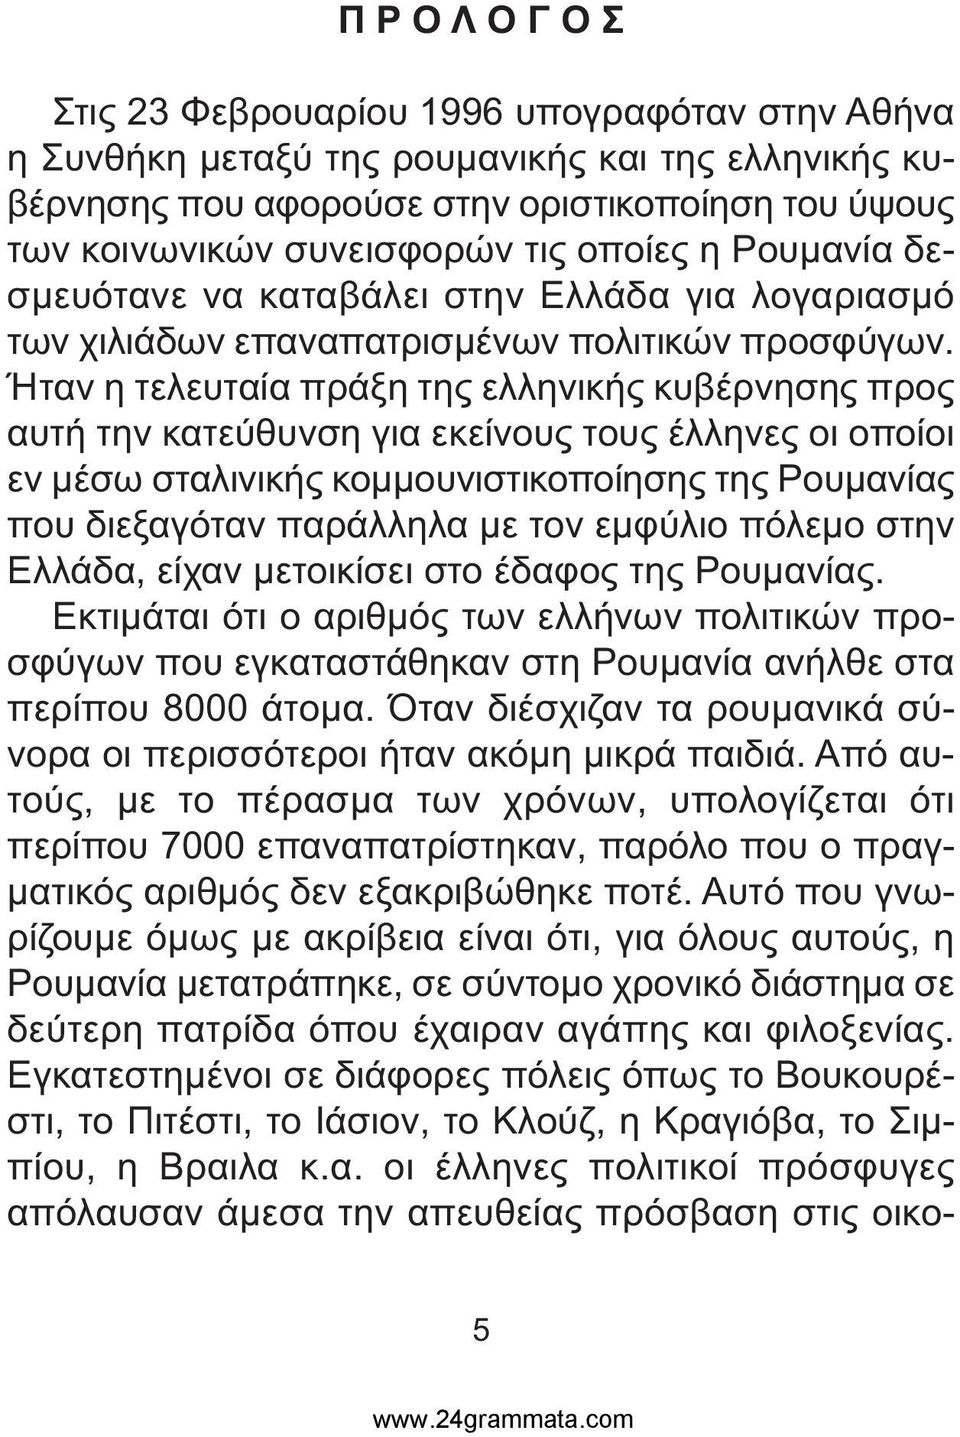 Ήταν η τελευταία πράξη της ελληνικής κυβέρνησης προς αυτή την κατεύθυνση για εκείνους τους έλληνες οι οποίοι εν µέσω σταλινικής κοµµουνιστικοποίησης της Ρουµανίας που διεξαγόταν παράλληλα µε τον